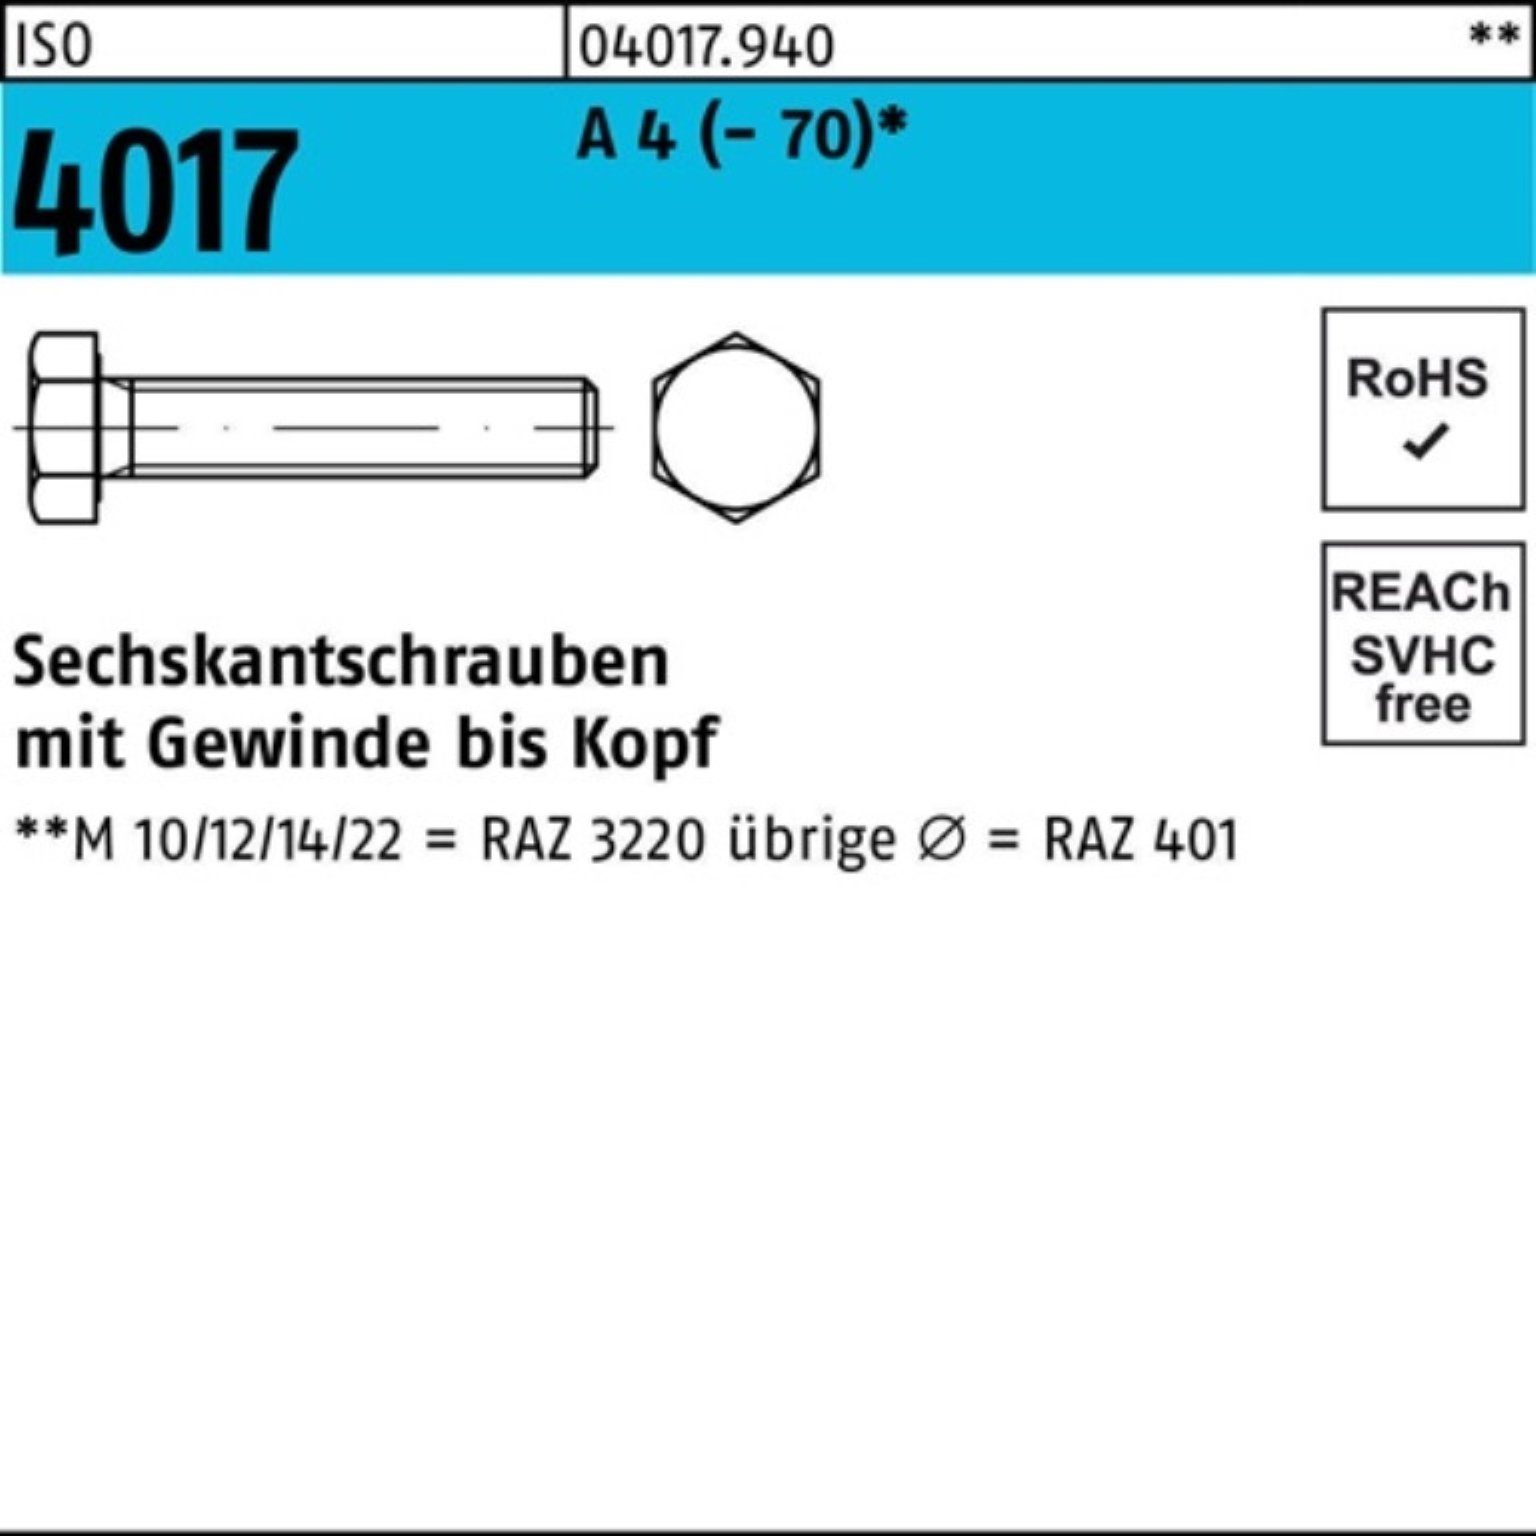 Bufab Sechskantschraube 100er Stück Sechskantschraube VG Pack M27x A (70) 100 4017 1 4 ISO